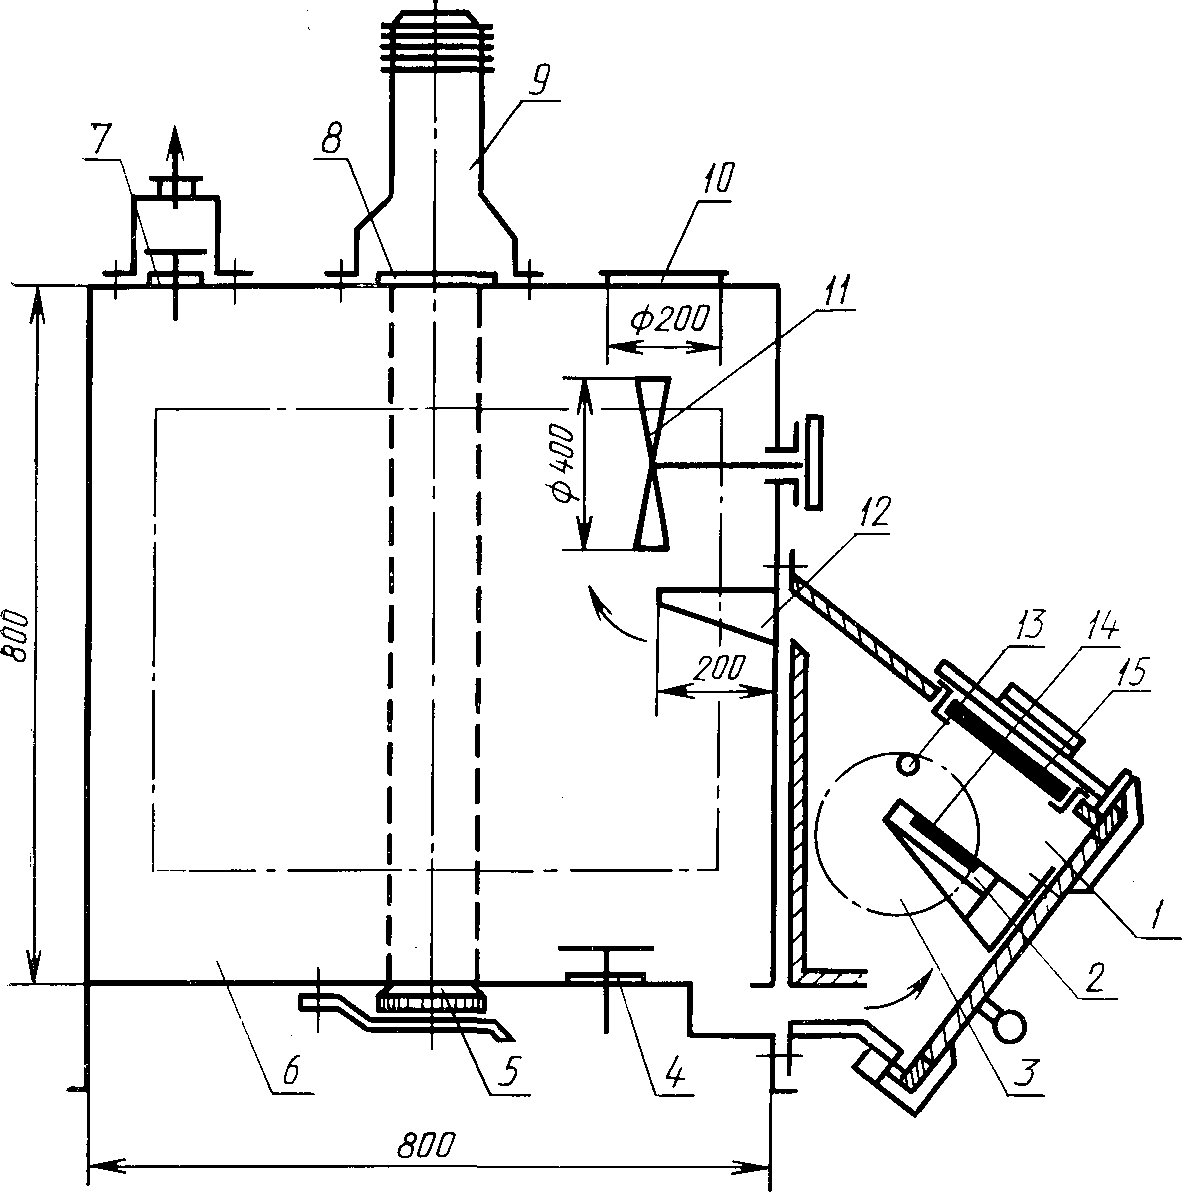 Схема установки «Дым» для определения коэффициента дымообразования твердых веществ и материалов  1 — камера сгорания; 2 — держатель образца; 3 — окно из кварцевого стекла; 4, 7 — клапаны продувки; 5— приемник света; 6 — камера измерений; 8 — кварцевое стекло; 9 — источник света; 10 — предохранительная мембрана; 11 — вентилятор; 12 — направляющий козырек; 13 — запальная горелка; 14 — вкладыш; 15 — электронагревательная панель.